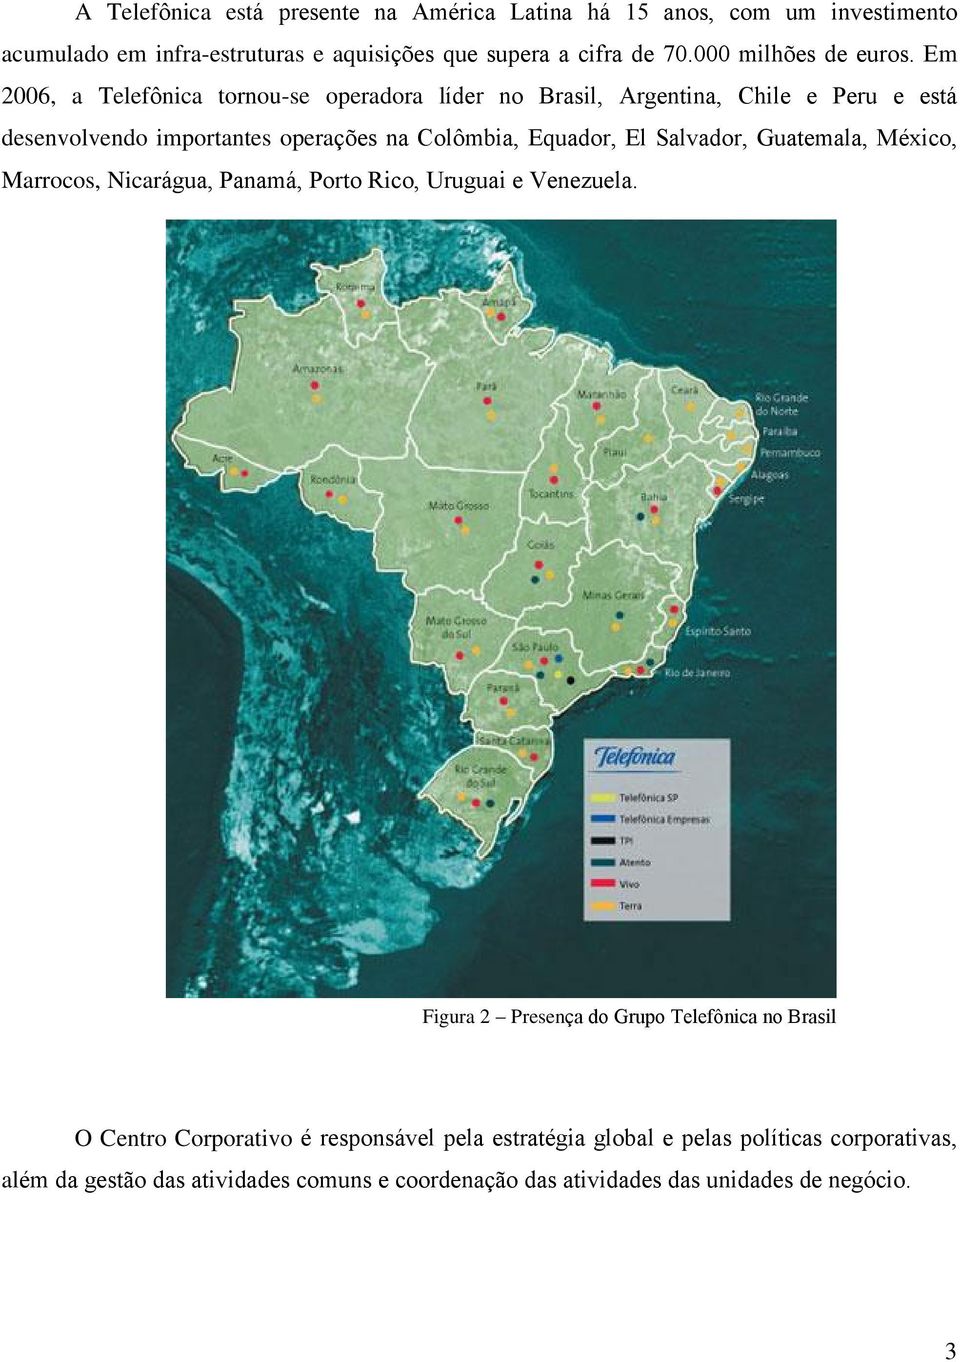 Em 2006, a Telefônica tornou-se operadora líder no Brasil, Argentina, Chile e Peru e está desenvolvendo importantes operações na Colômbia, Equador, El